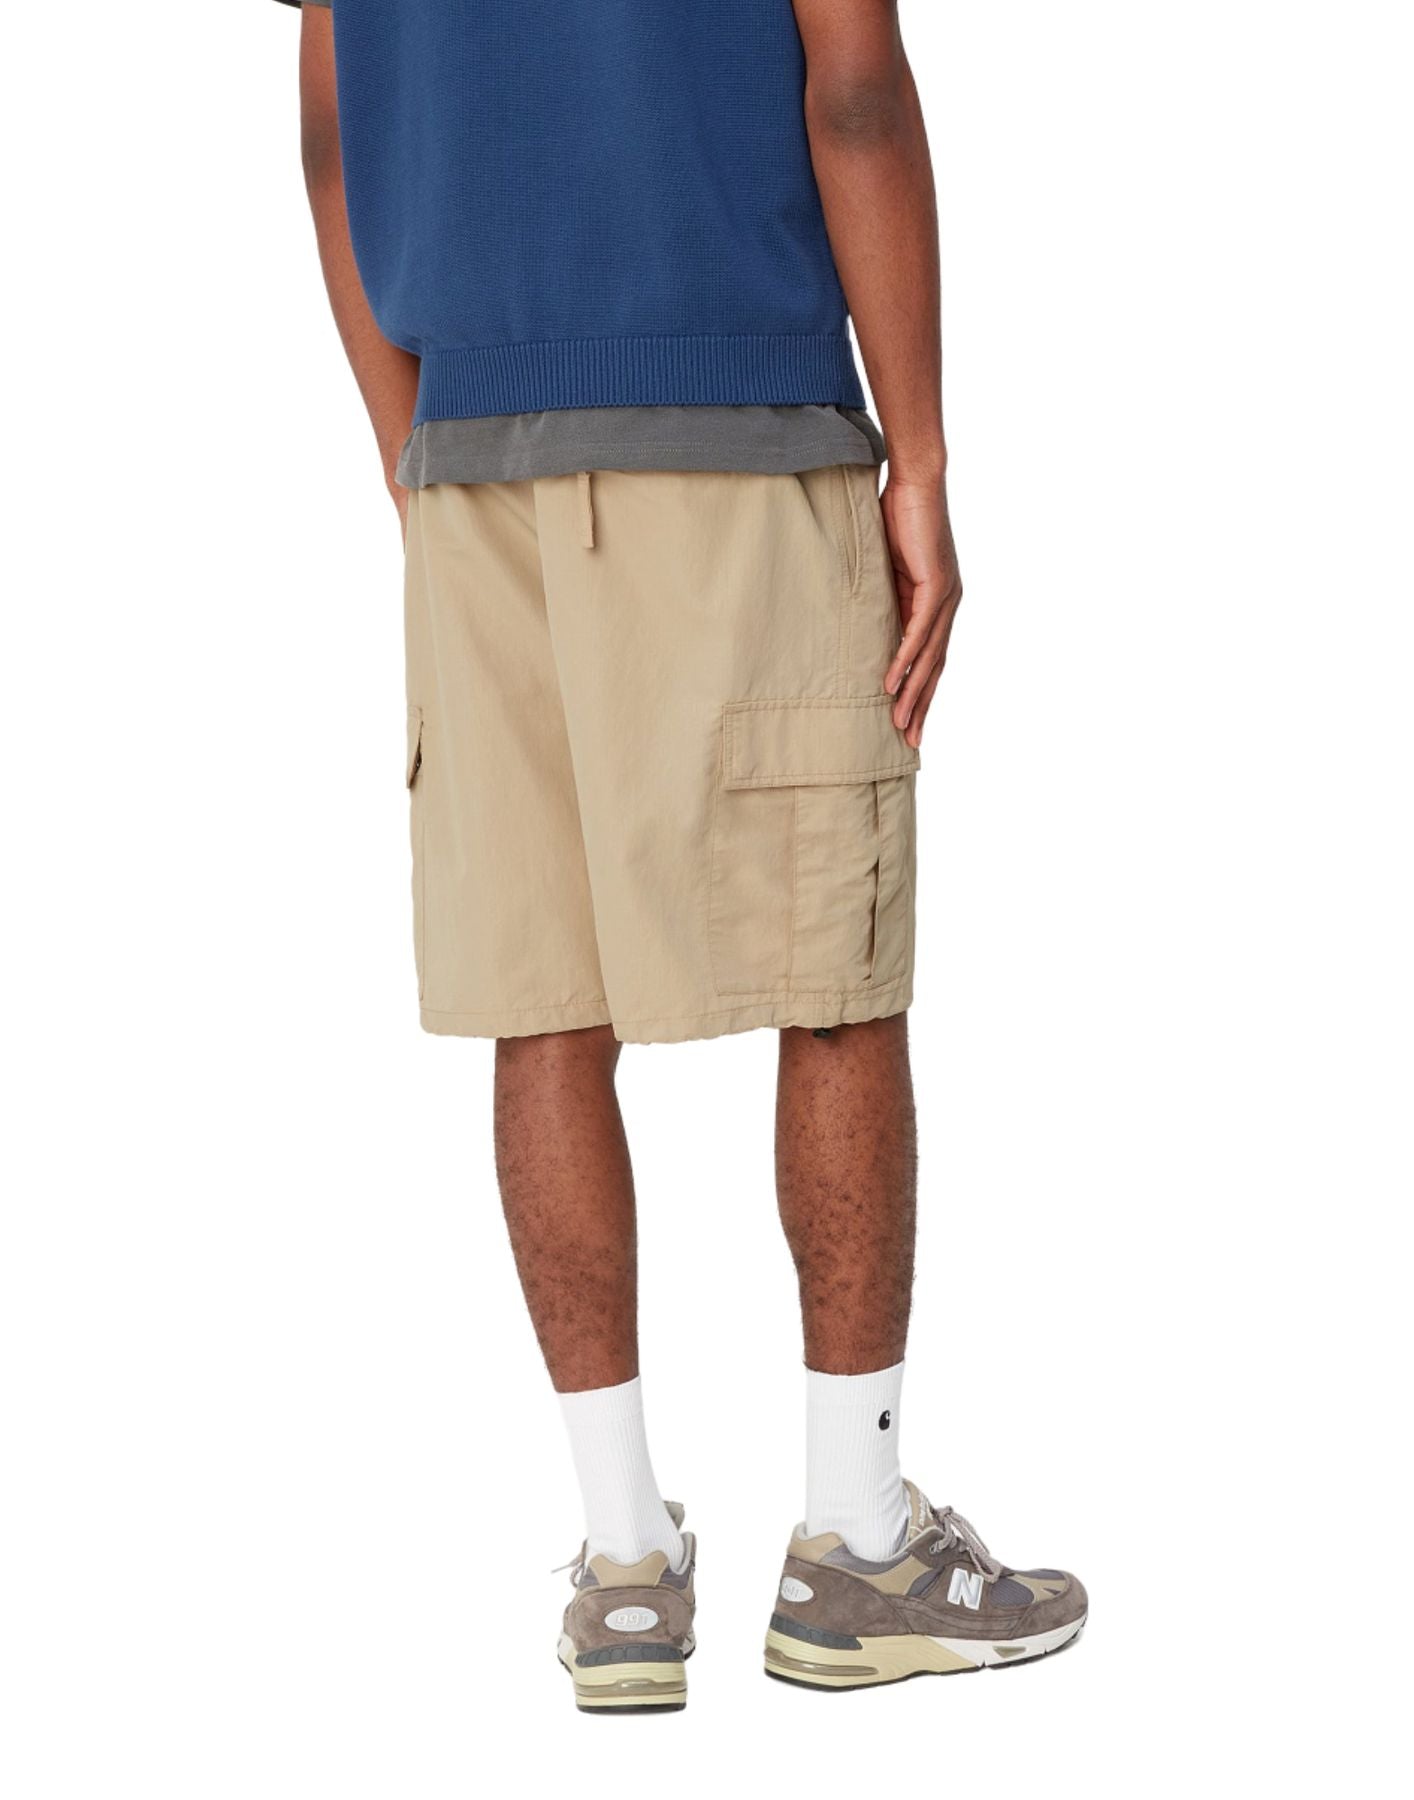 Pantalones cortos para hombre i033025 g1.xx beige CARHARTT WIP